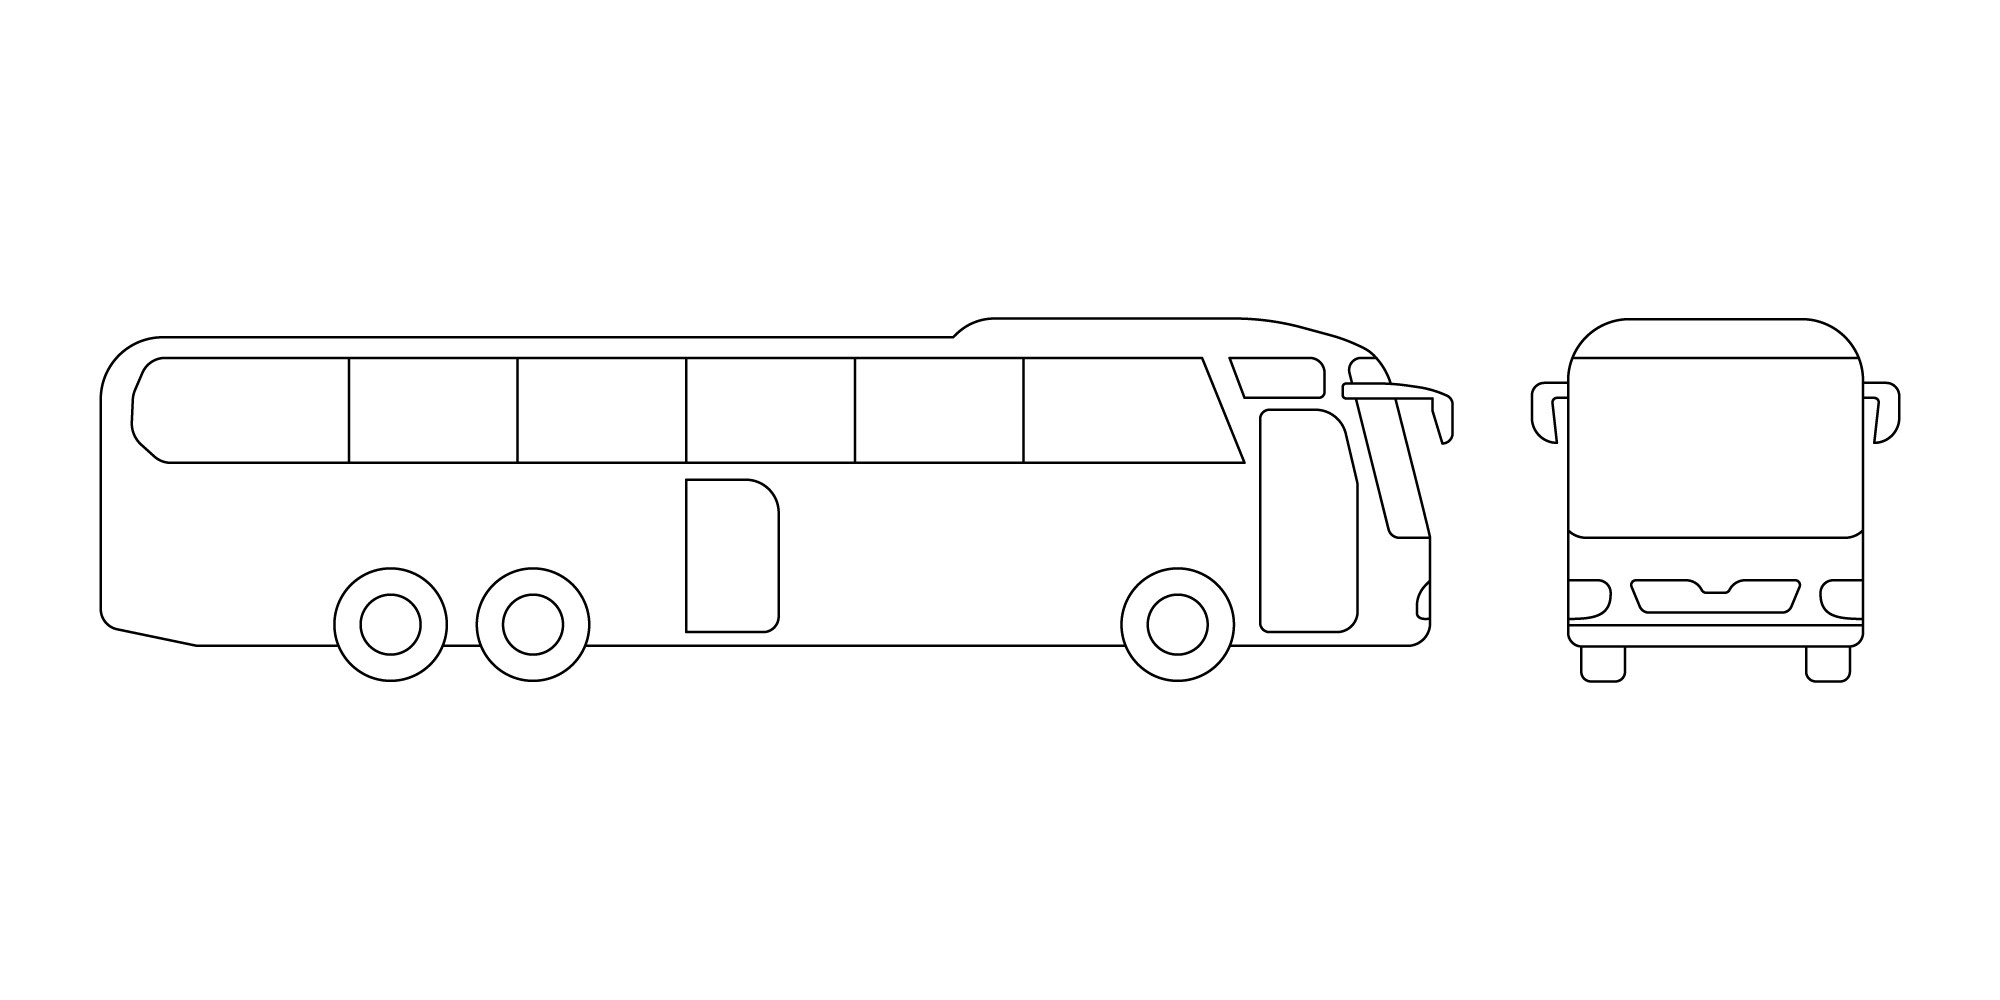 Раскраска для детей: автобус в профиль и вид спереди